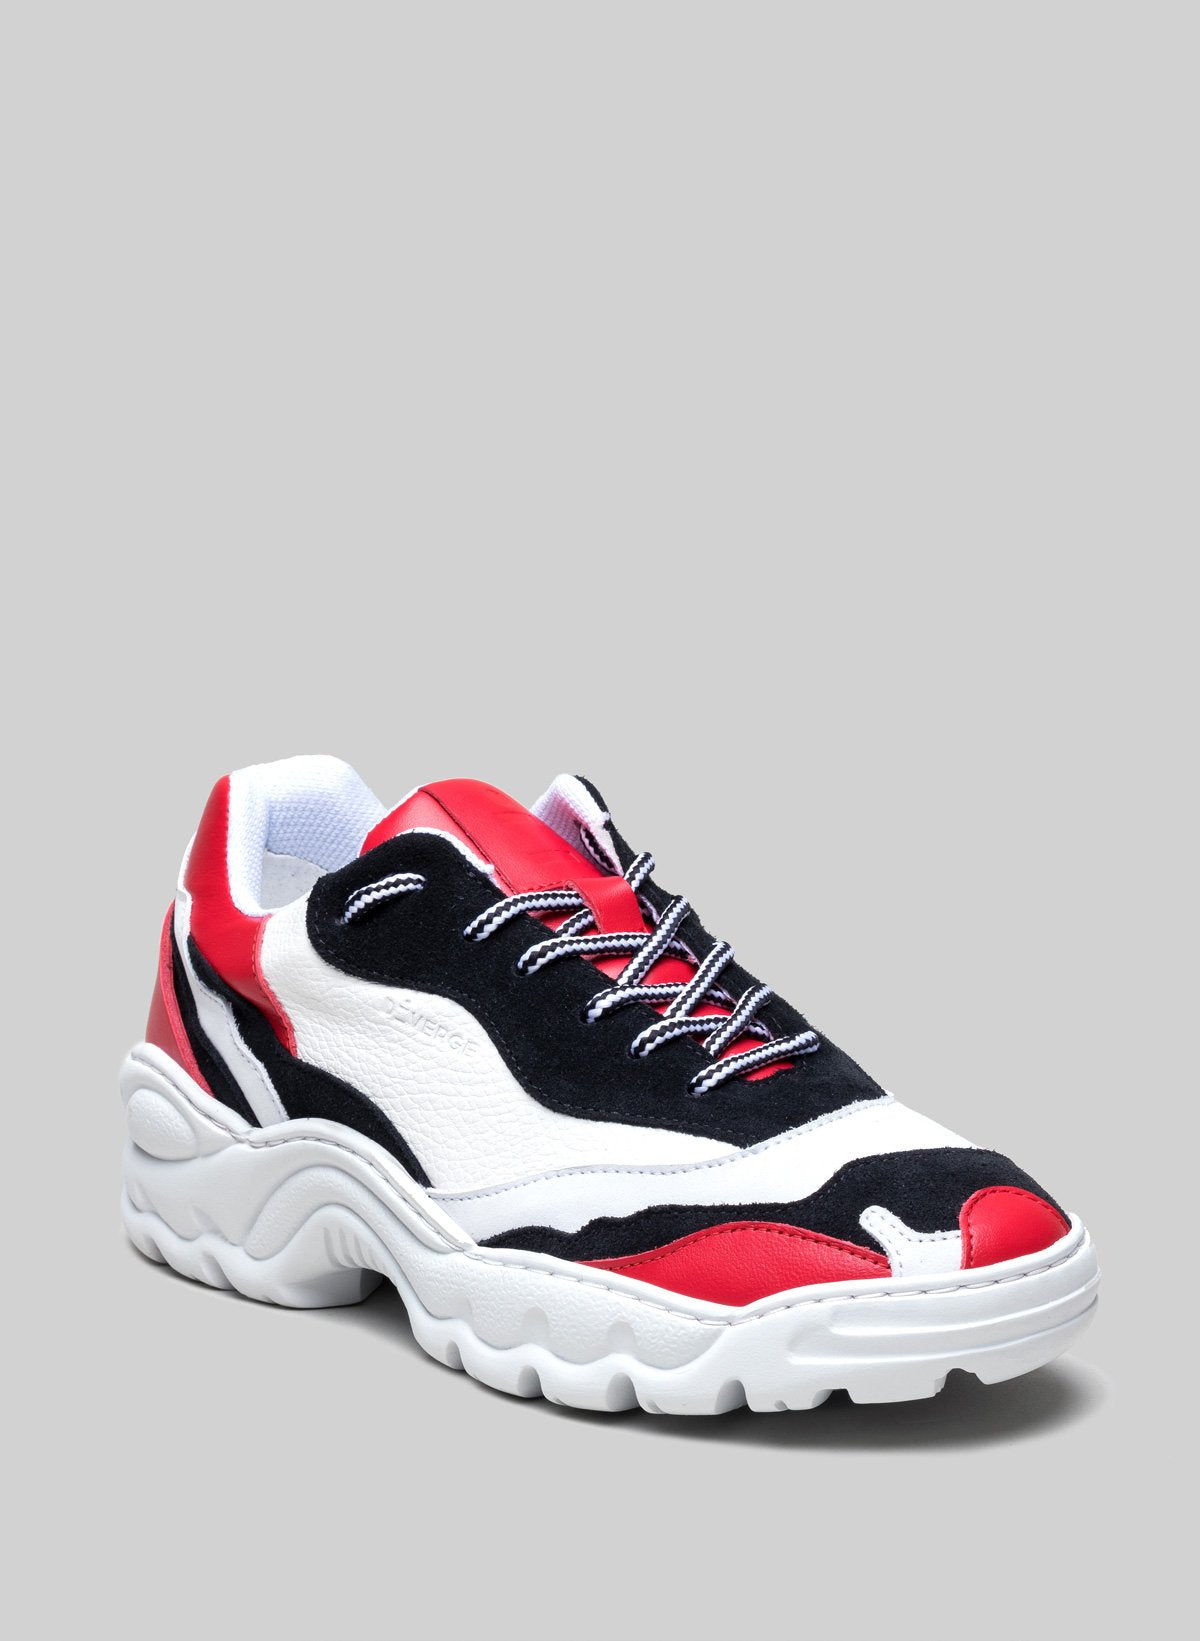 Sneaker nera, bianca e rossa di Diverge, che promuove l'impatto sociale e le scarpe personalizzate.